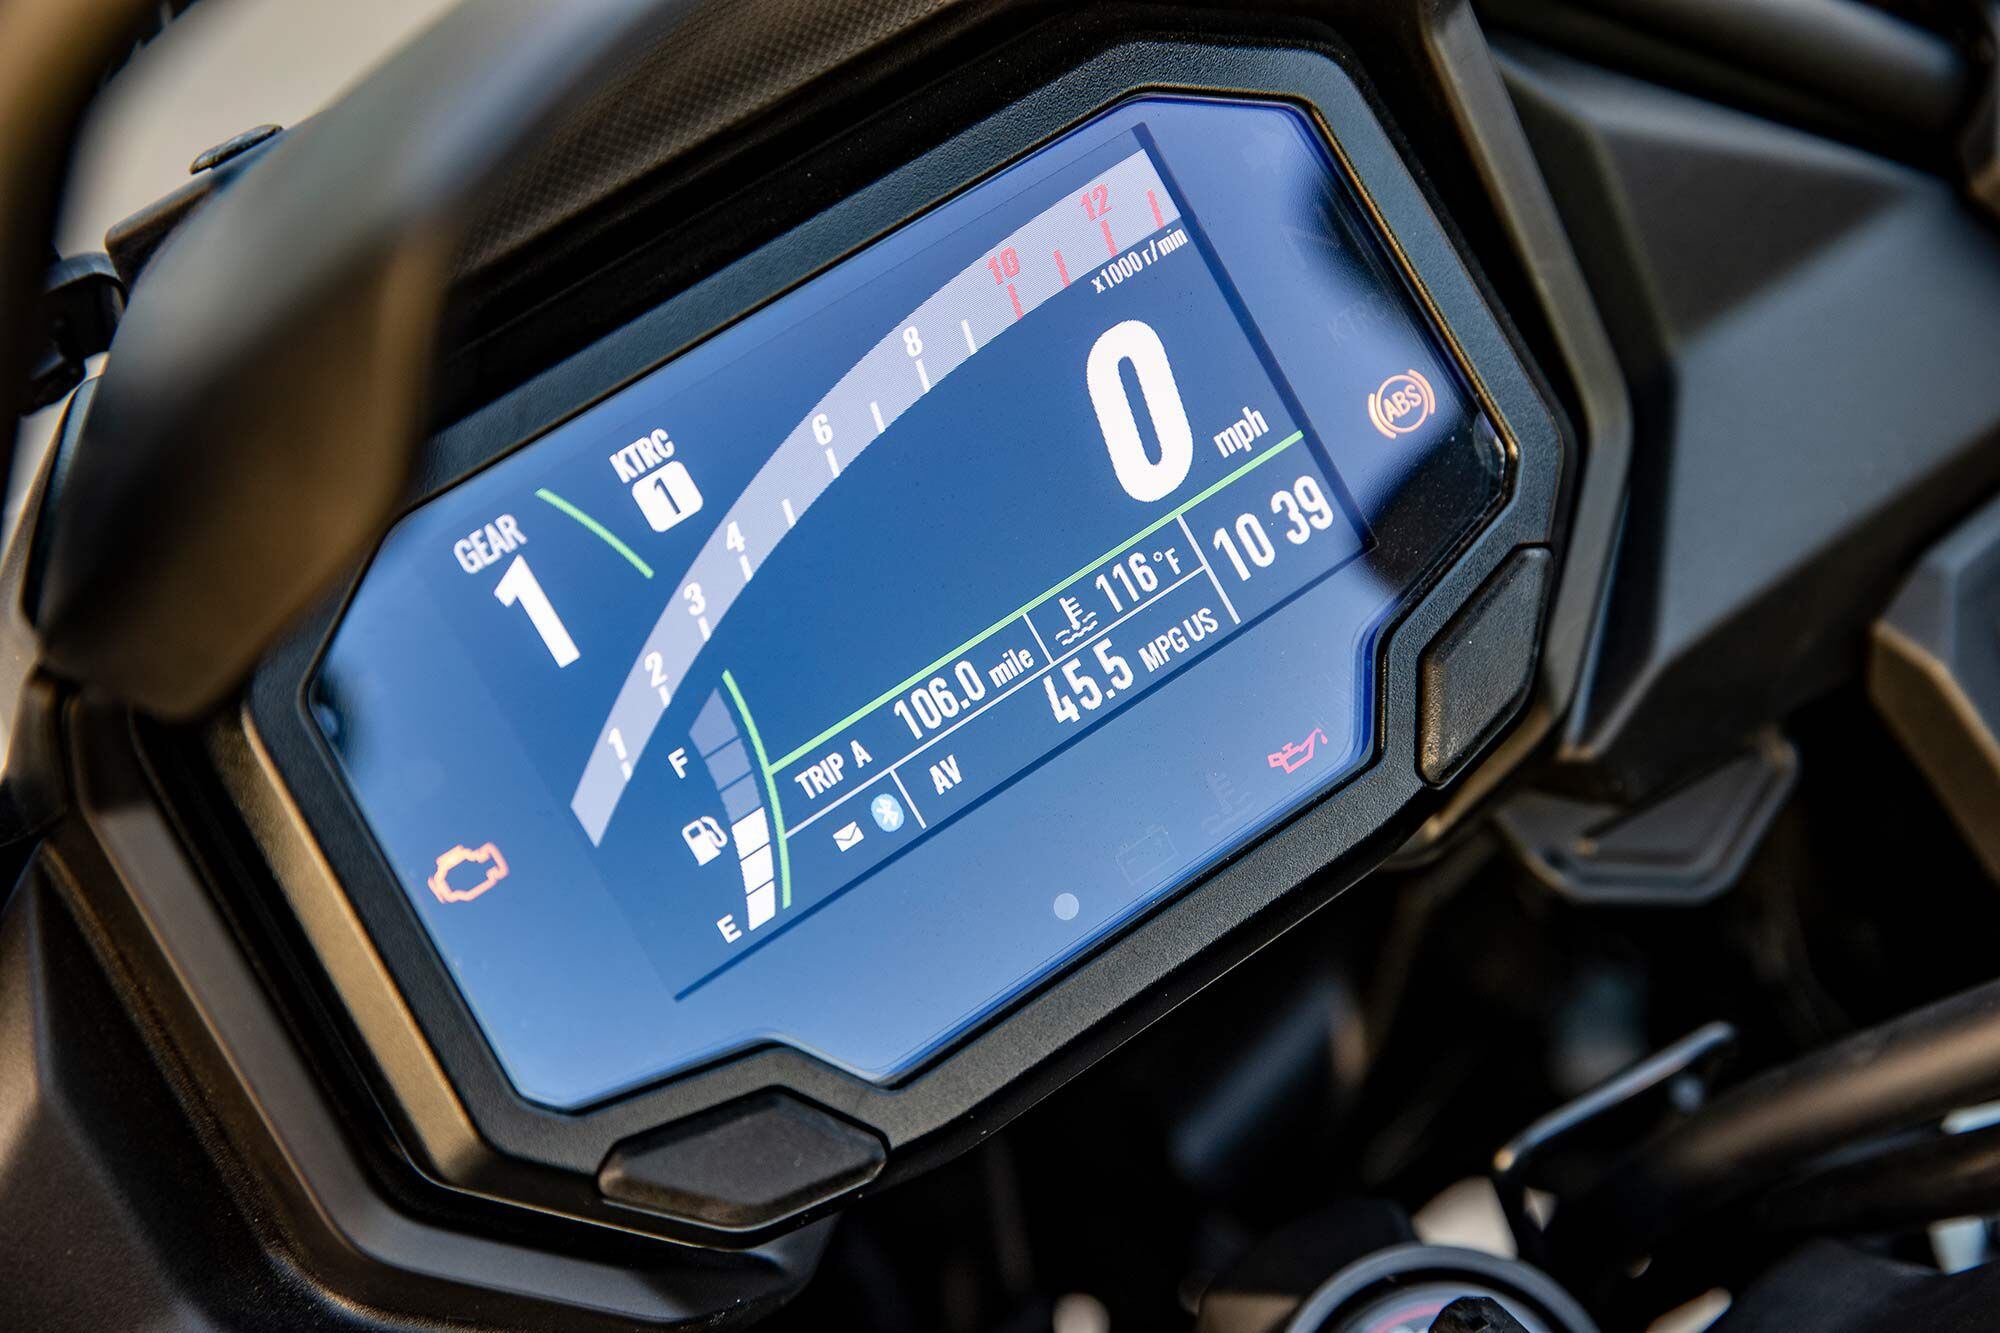 Kawasaki's all-new dash has a crisp, clean design.